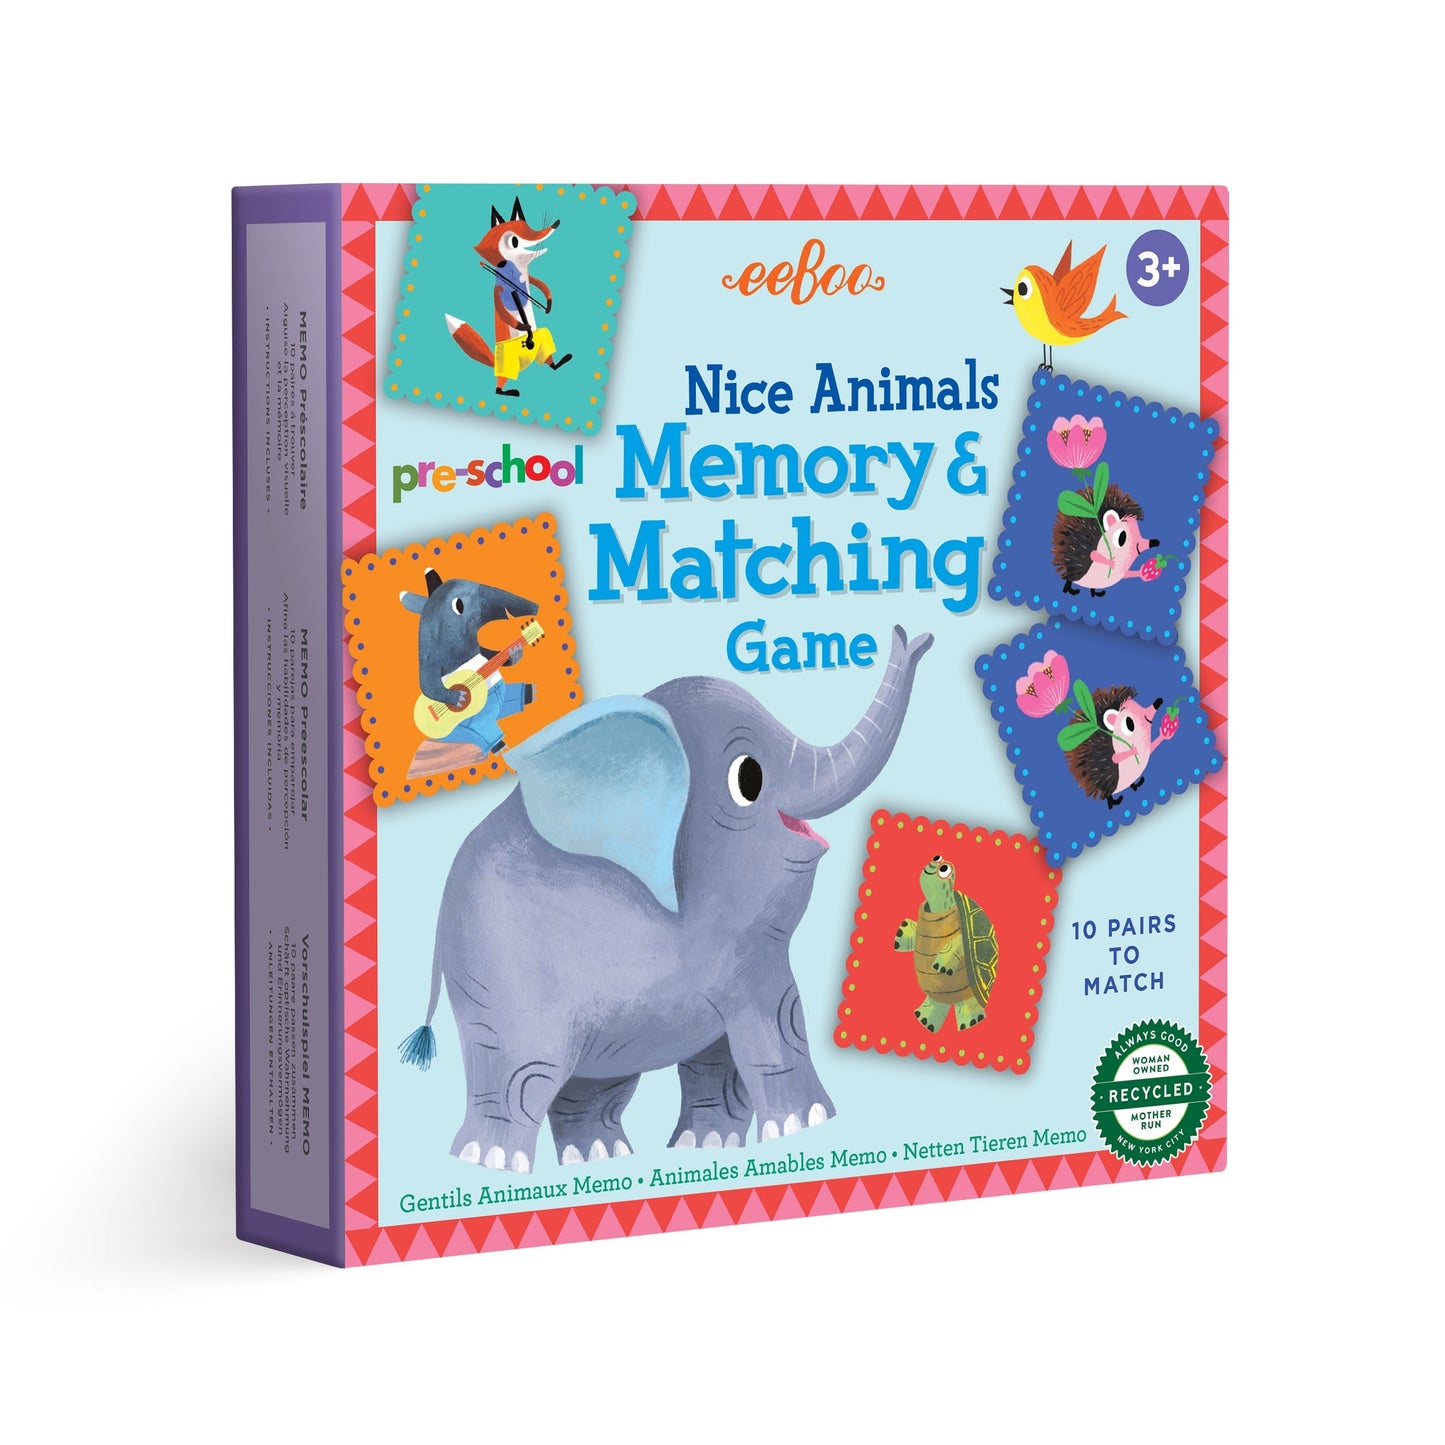 Pre-school Nice Animals Memory Game eeBoo Unique Fun Gifts for Pre School Kids 3+